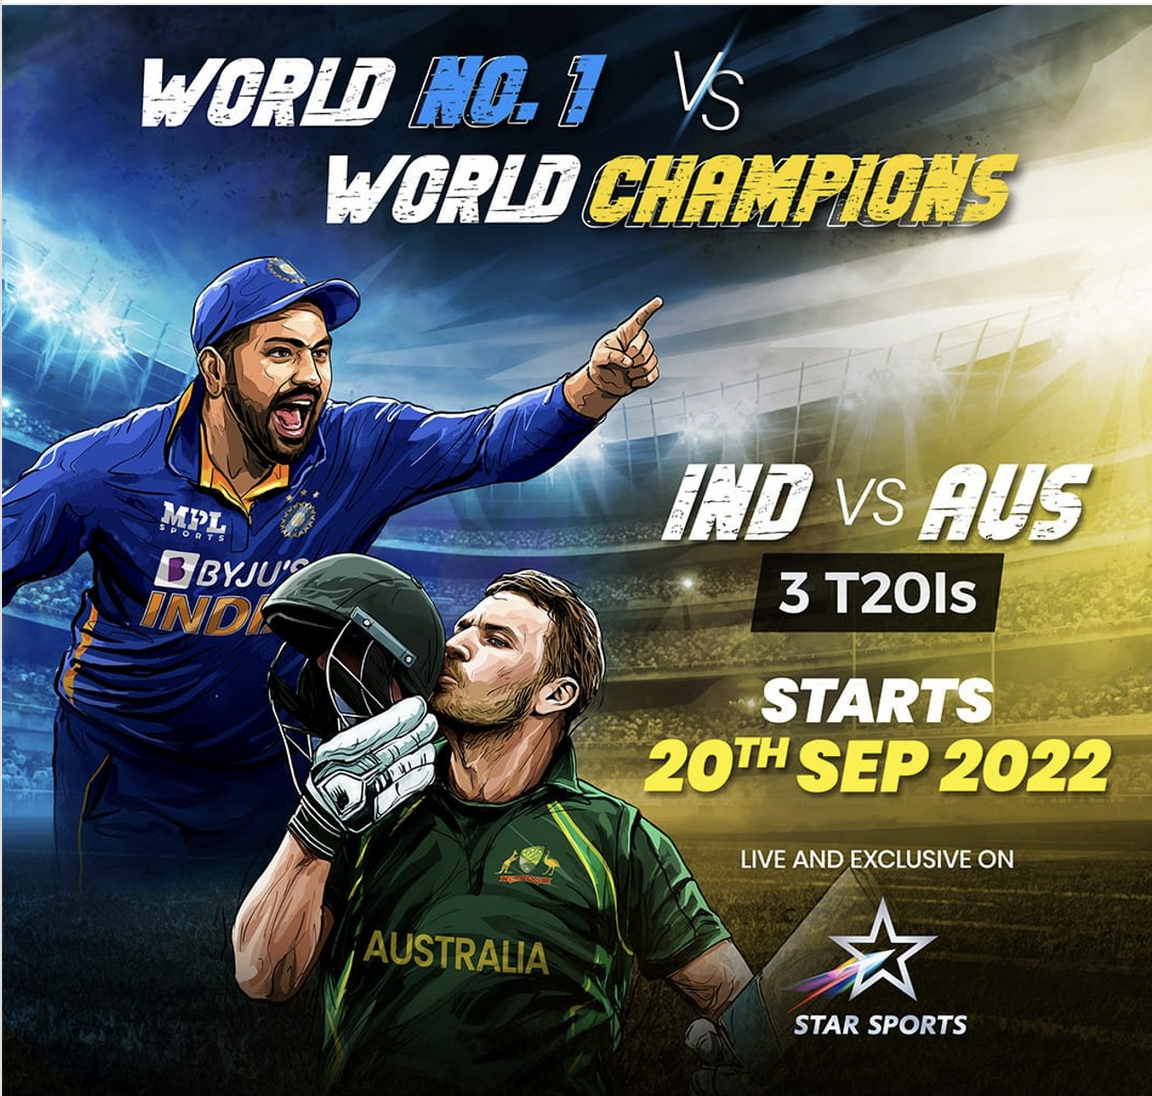 HİNDİSTAN Squad Australia T20s: Hindistan vs Avustralya T20 Series 20 Eylül'de, Selectors gelecek hafta kadroyu belirleyecek: IND AUS T20 Series, Hindistan T20 WC Squad 